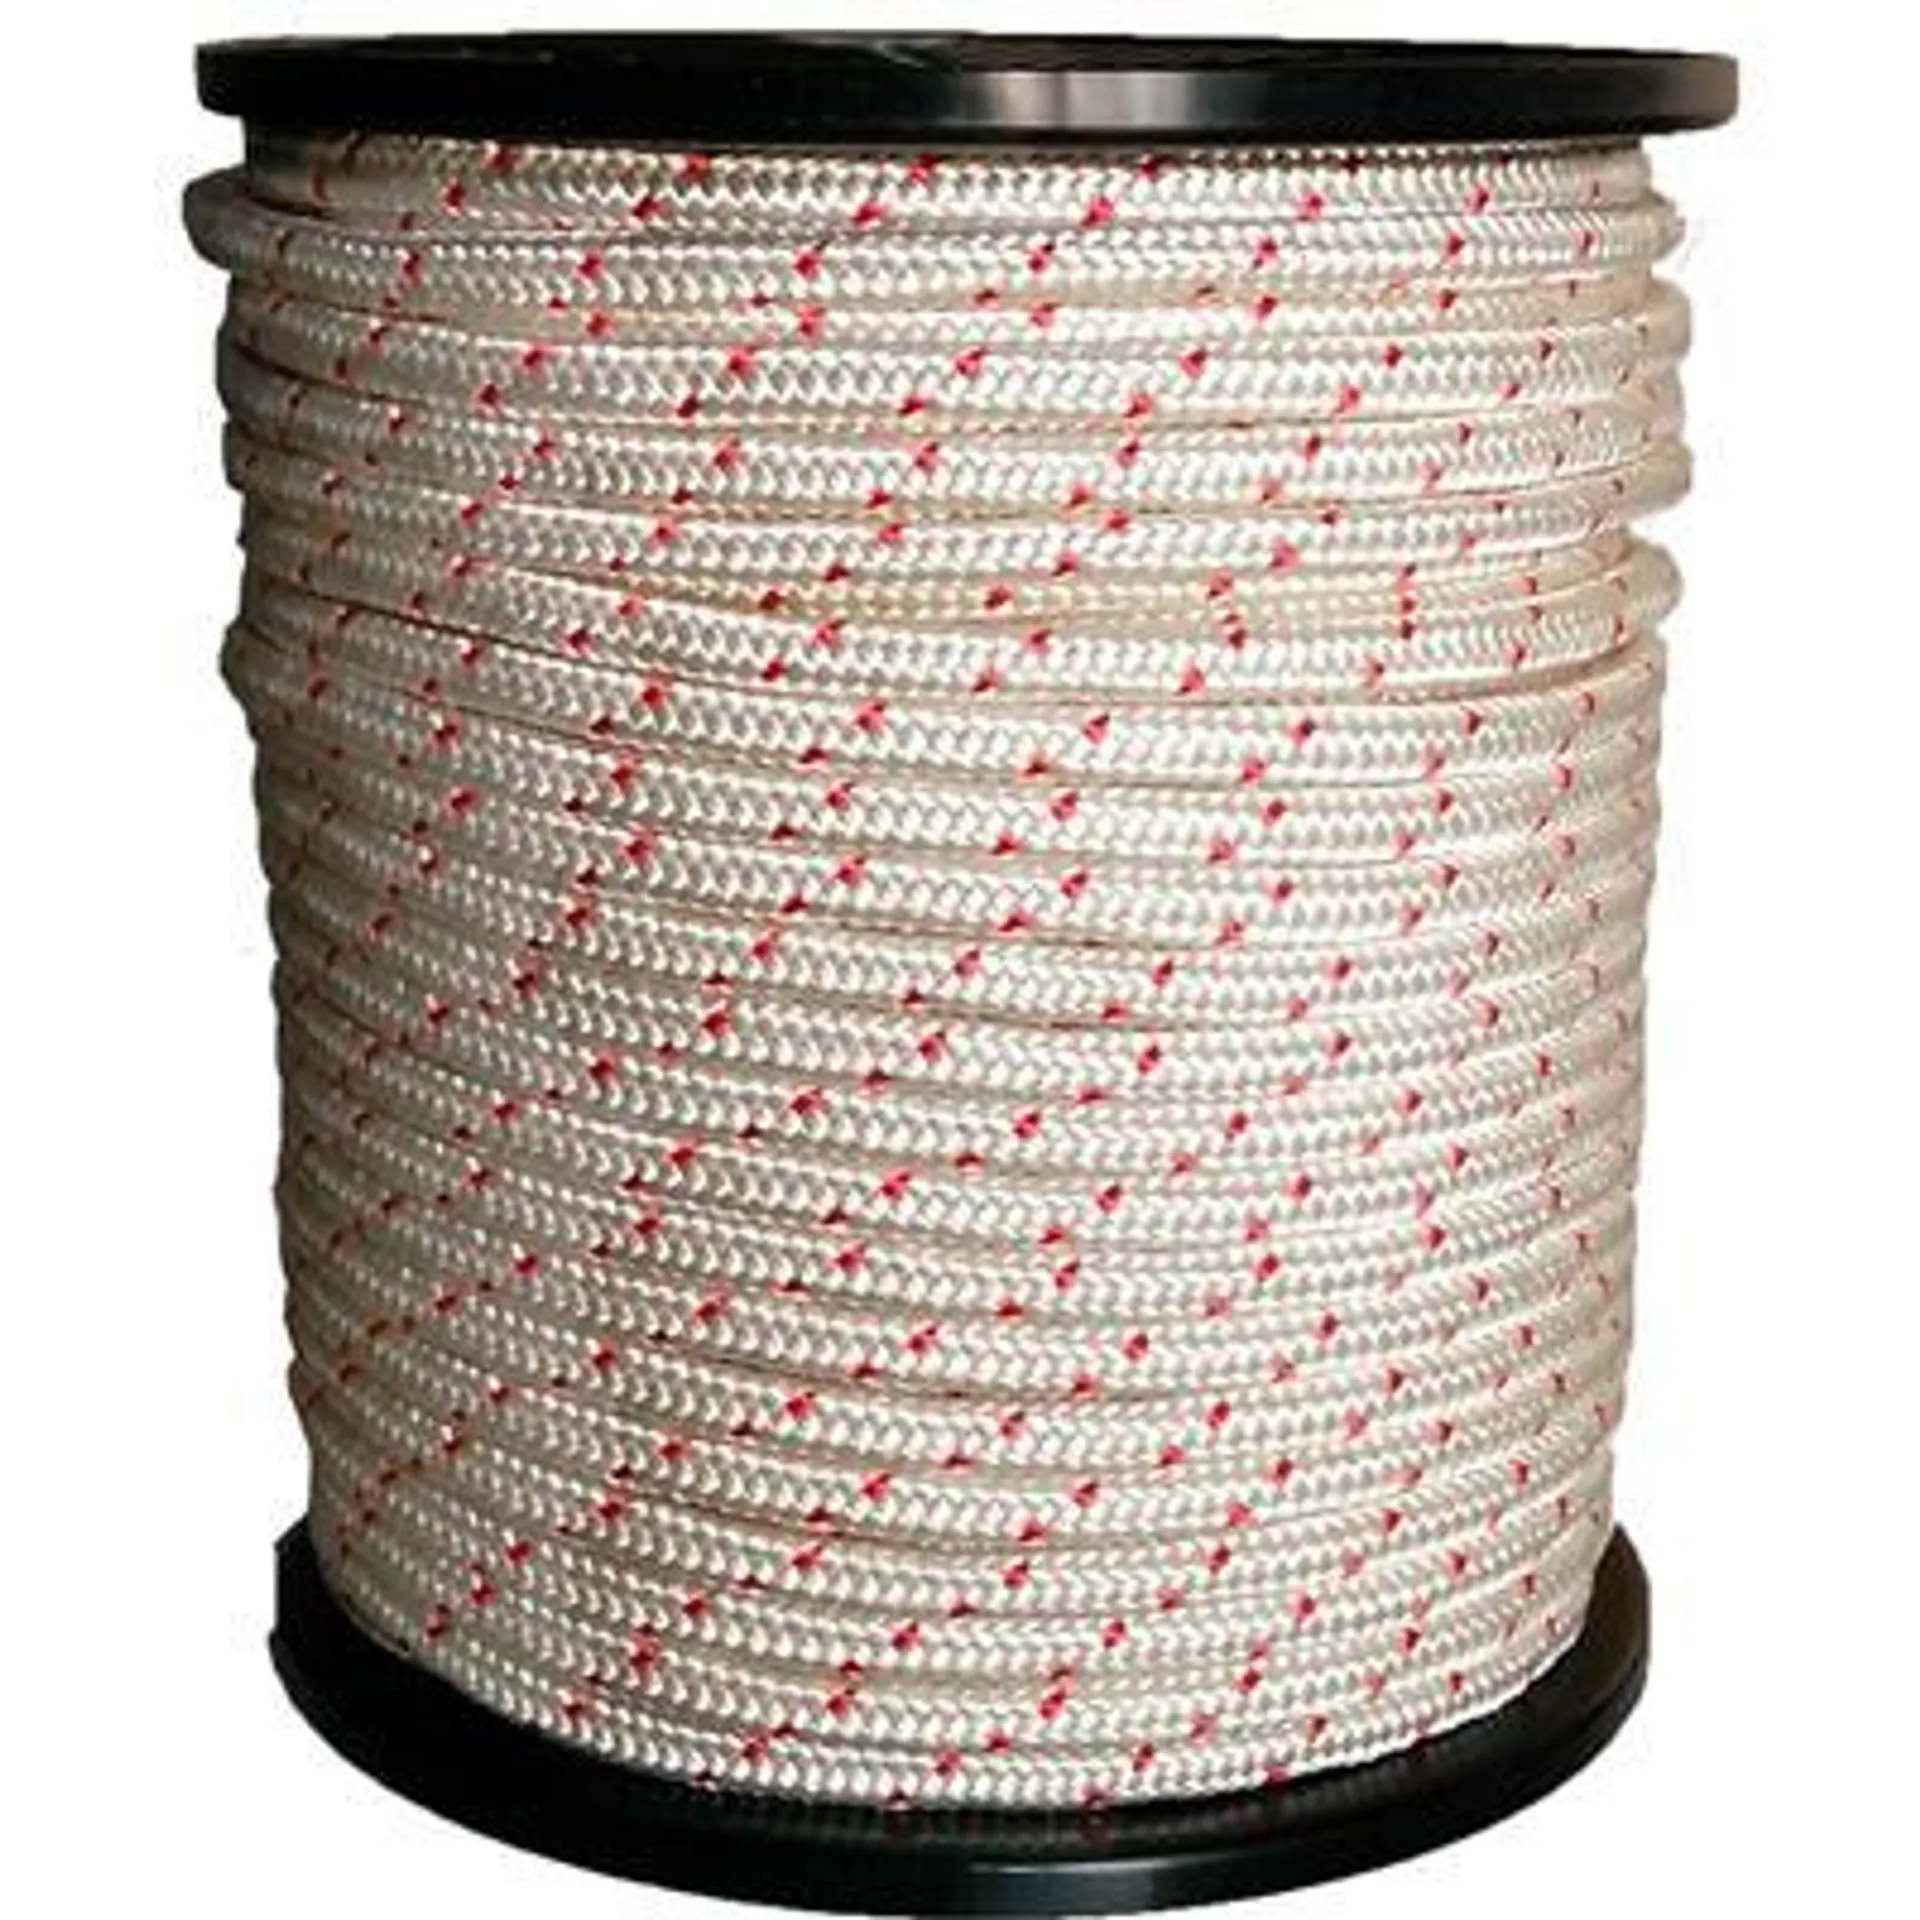 Rouleau corde Polyester tressé marquée Rouge 12mm x 65m